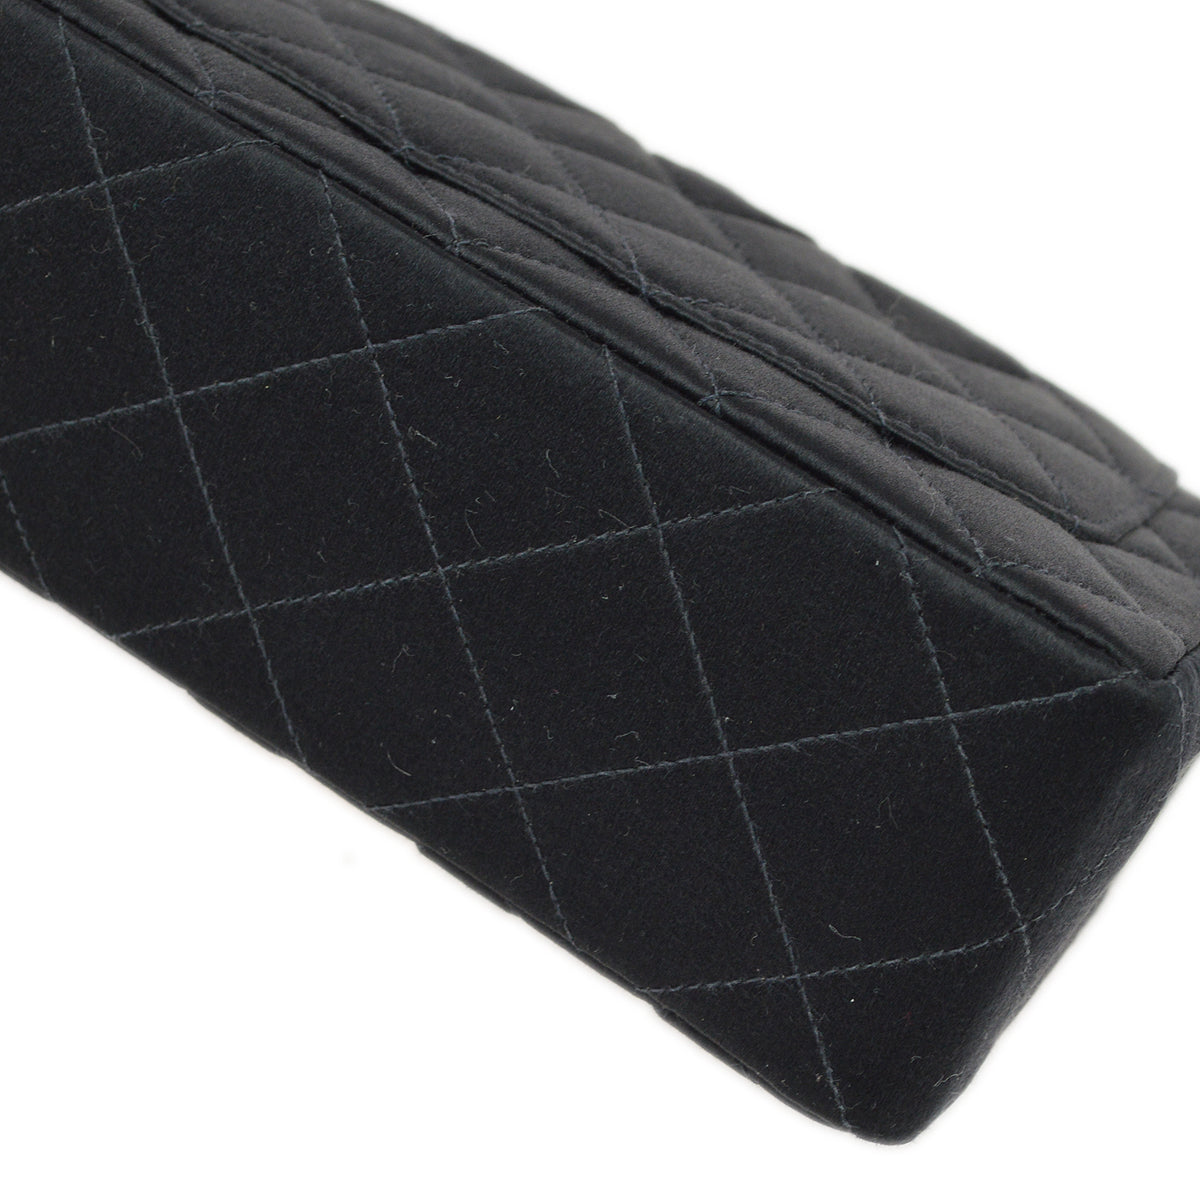 Chanel 黑色缎面迷你經典方形翻蓋包 17